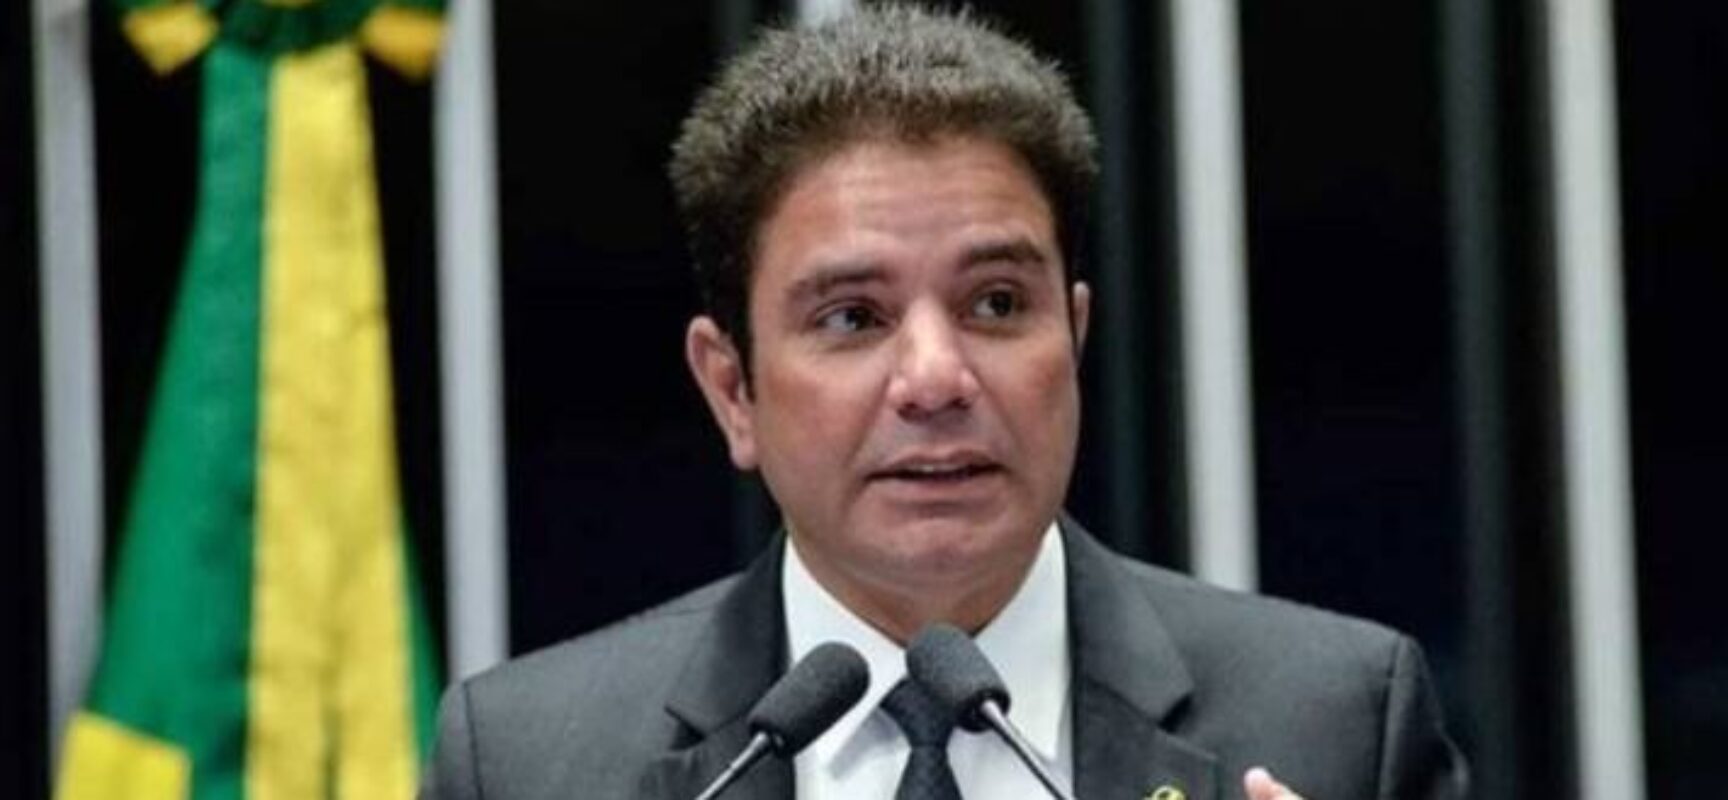 “Diálogos chocantes”, diz PF sobre mensagens encontradas em celular de governador do Acre